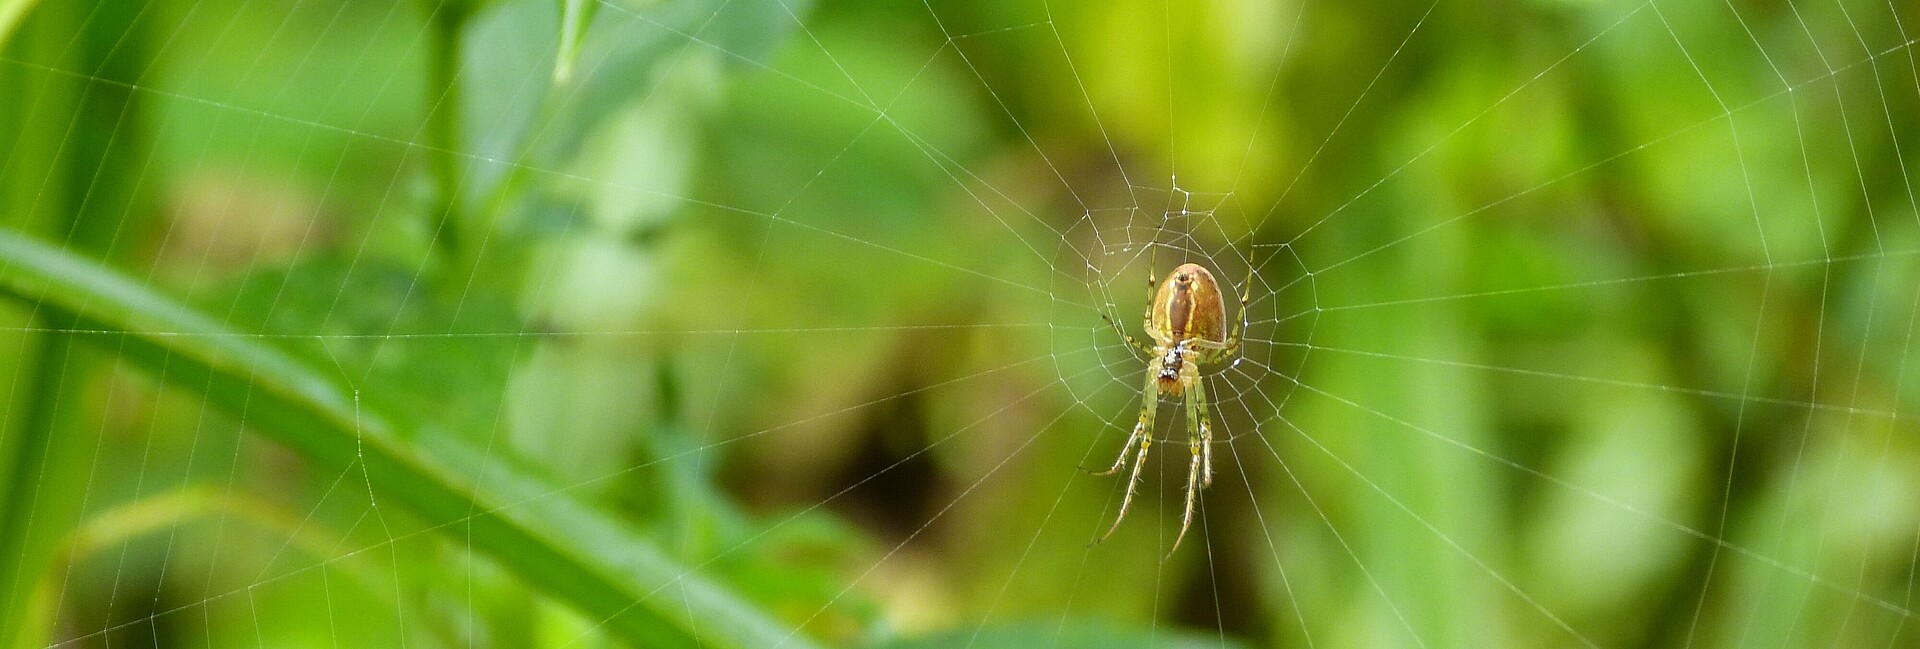 Nahaufnahme einer Spinne mitten in ihrem Netz